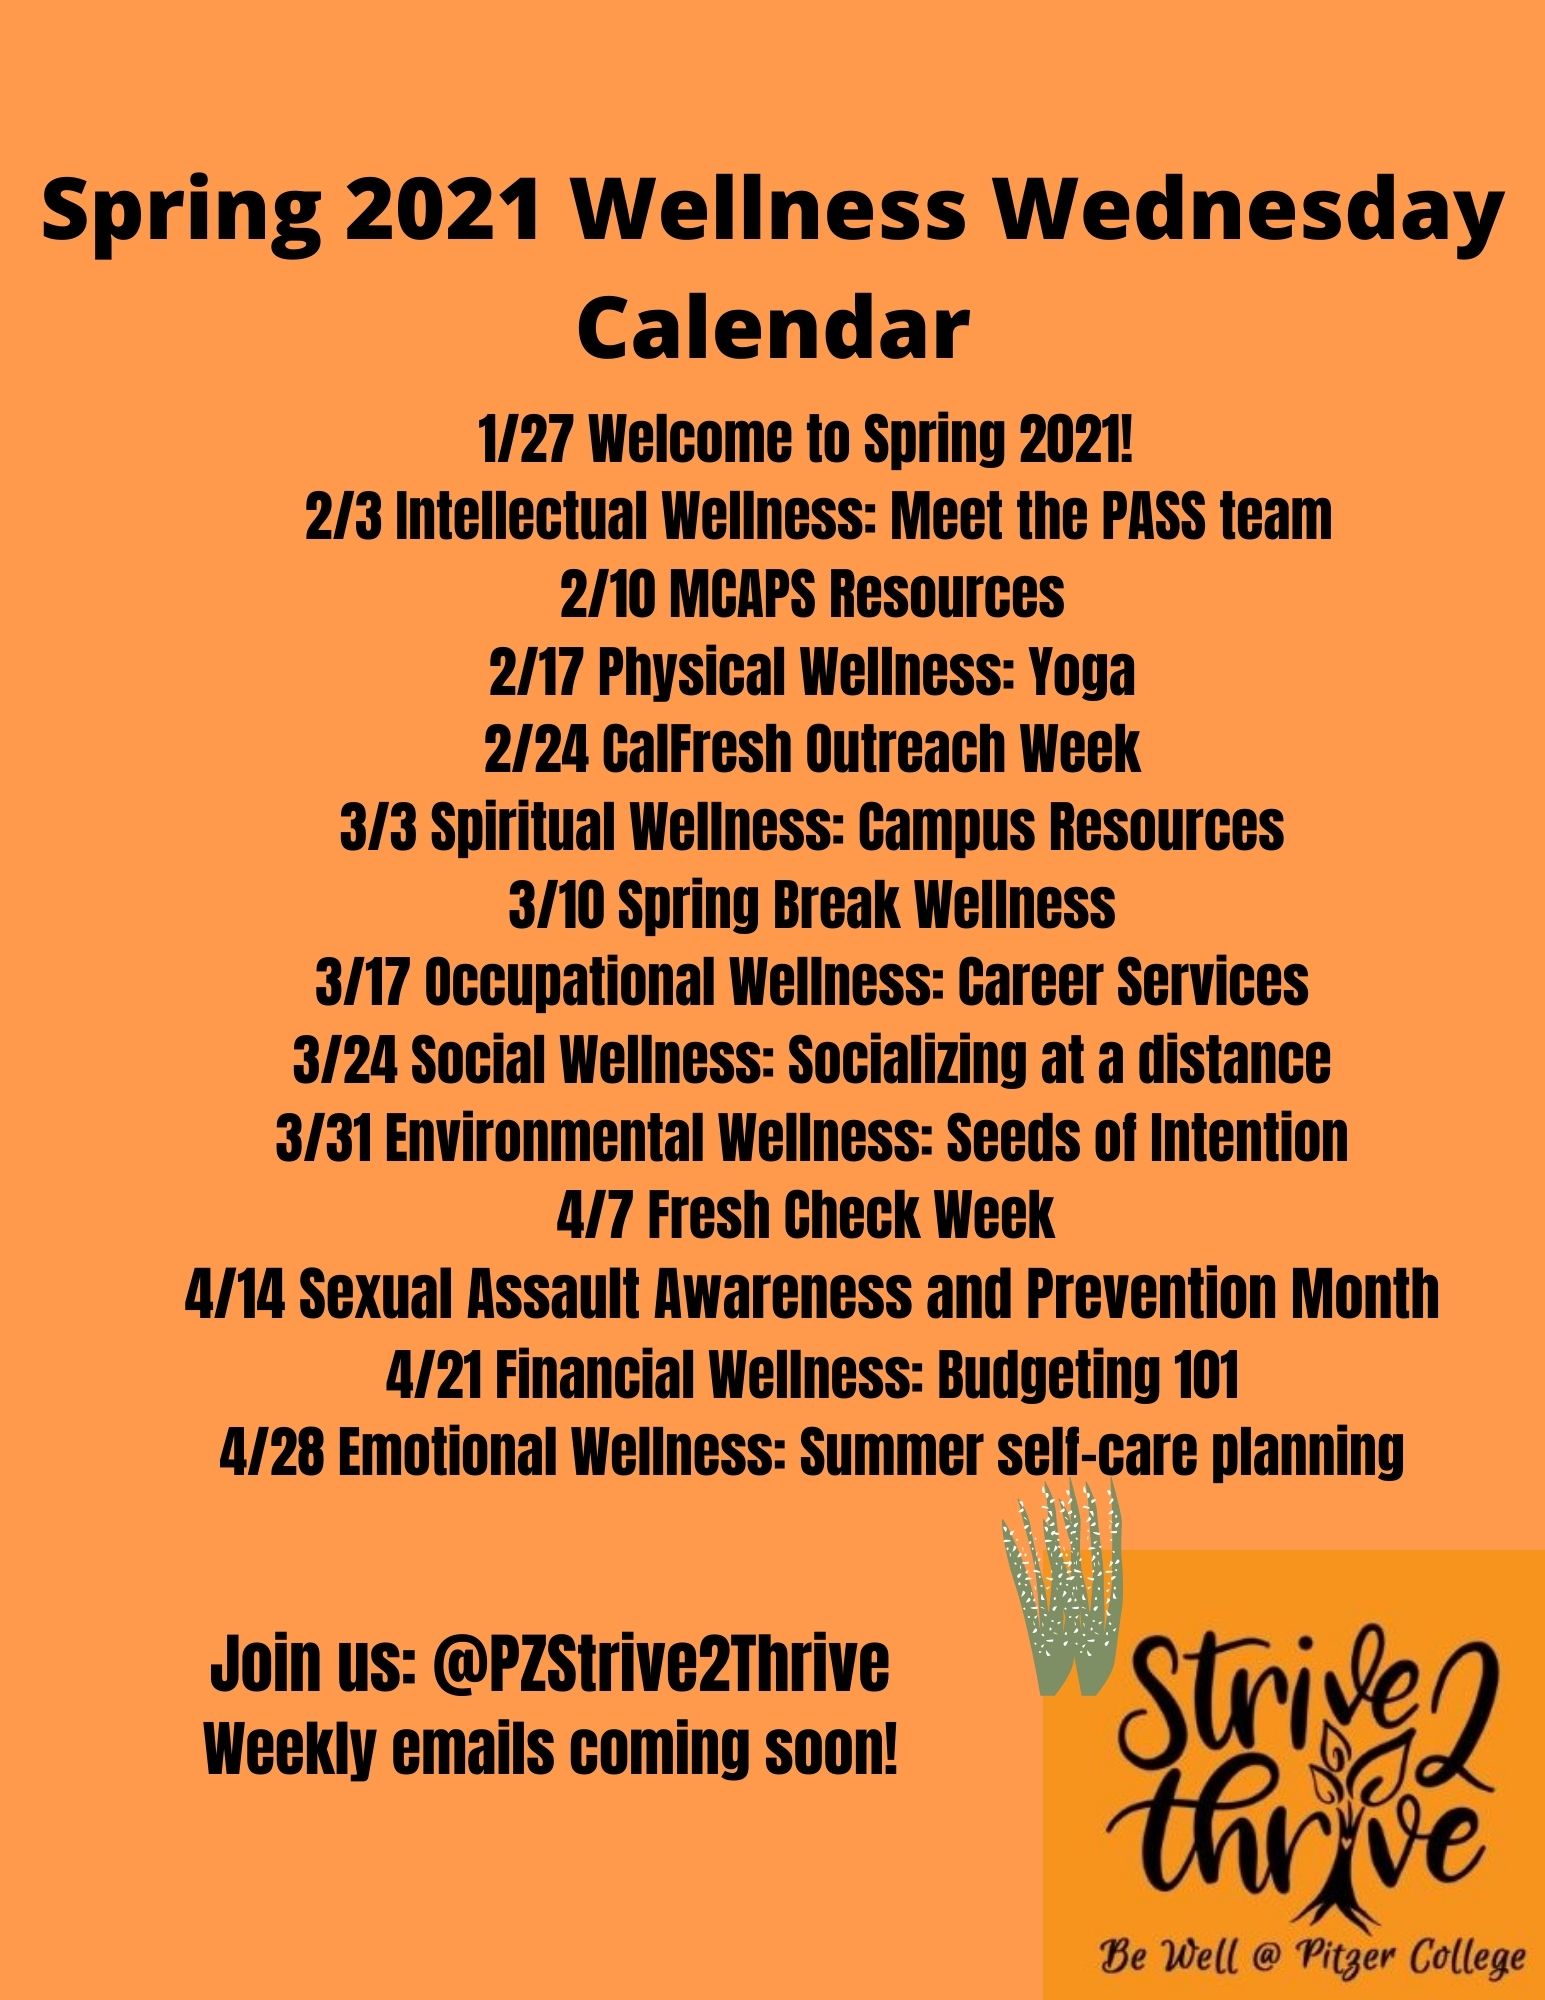 Pitzer College Calendar 2022 Wellness Wednesday - Pitzer College